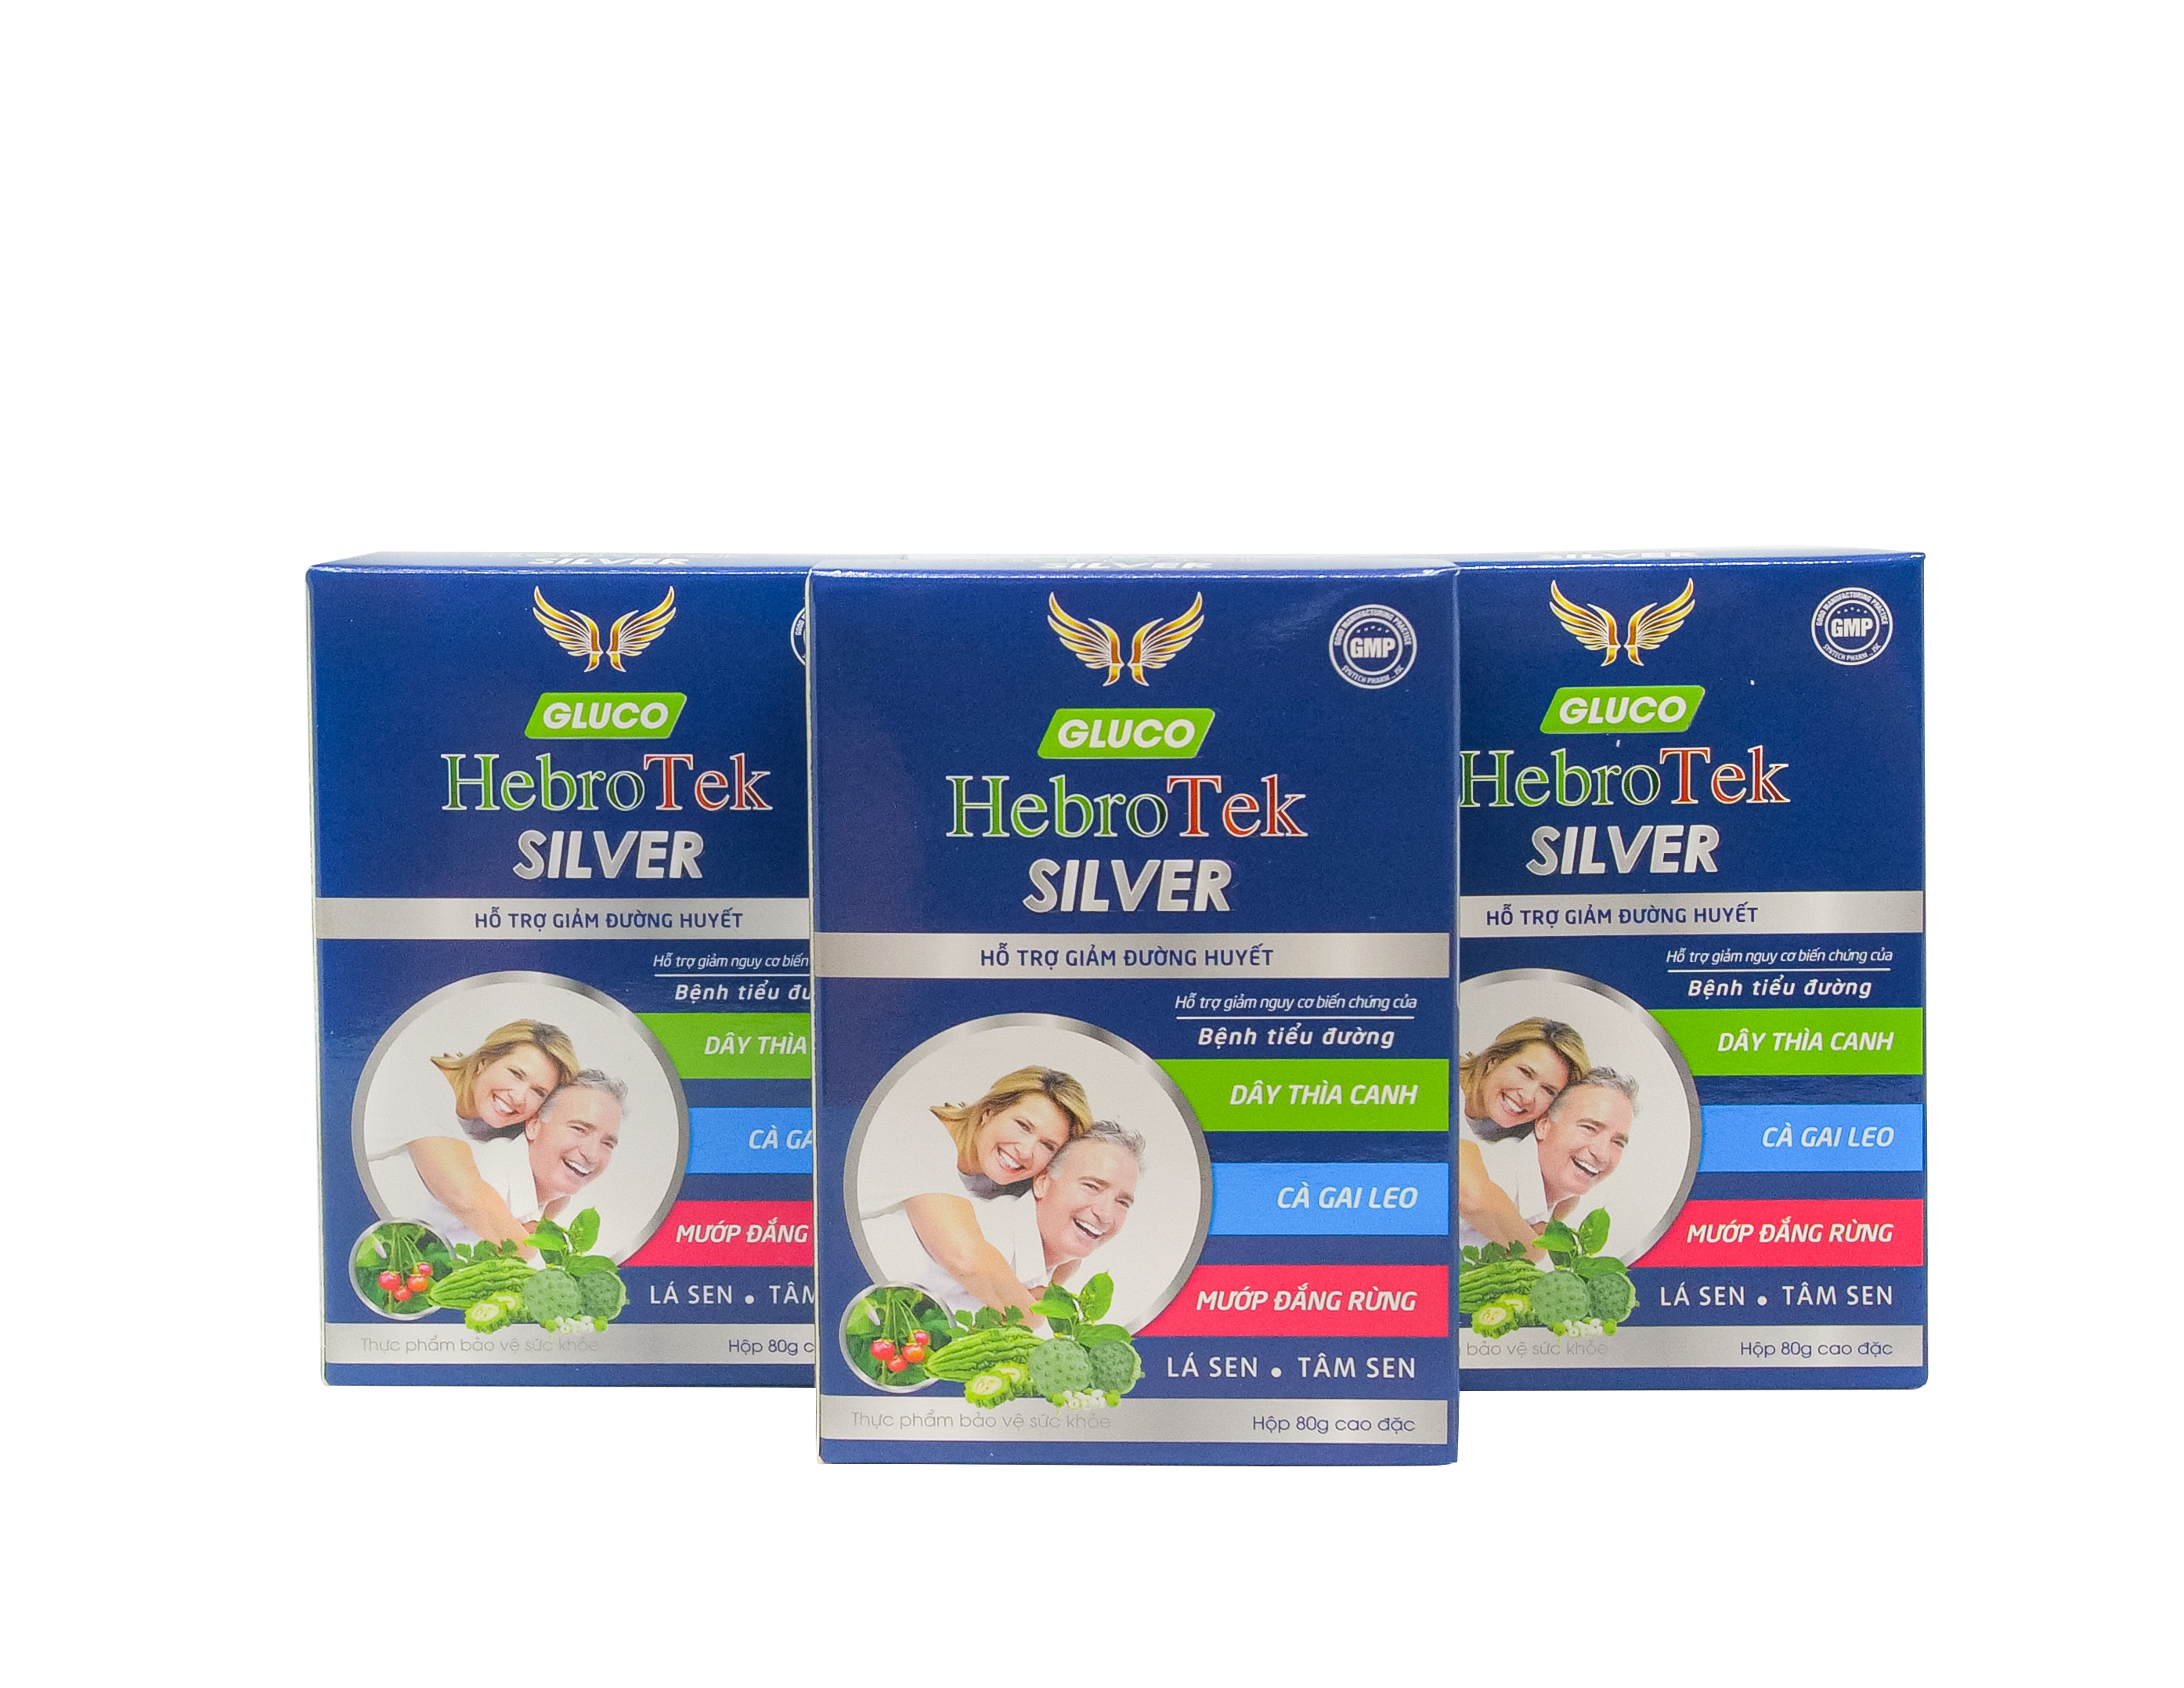 Sức khoẻ - Làm đẹp - Gluco HebroTek Silver: giải pháp mới giúp bệnh nhân tiểu đường an tâm sống khỏe (Hình 5).